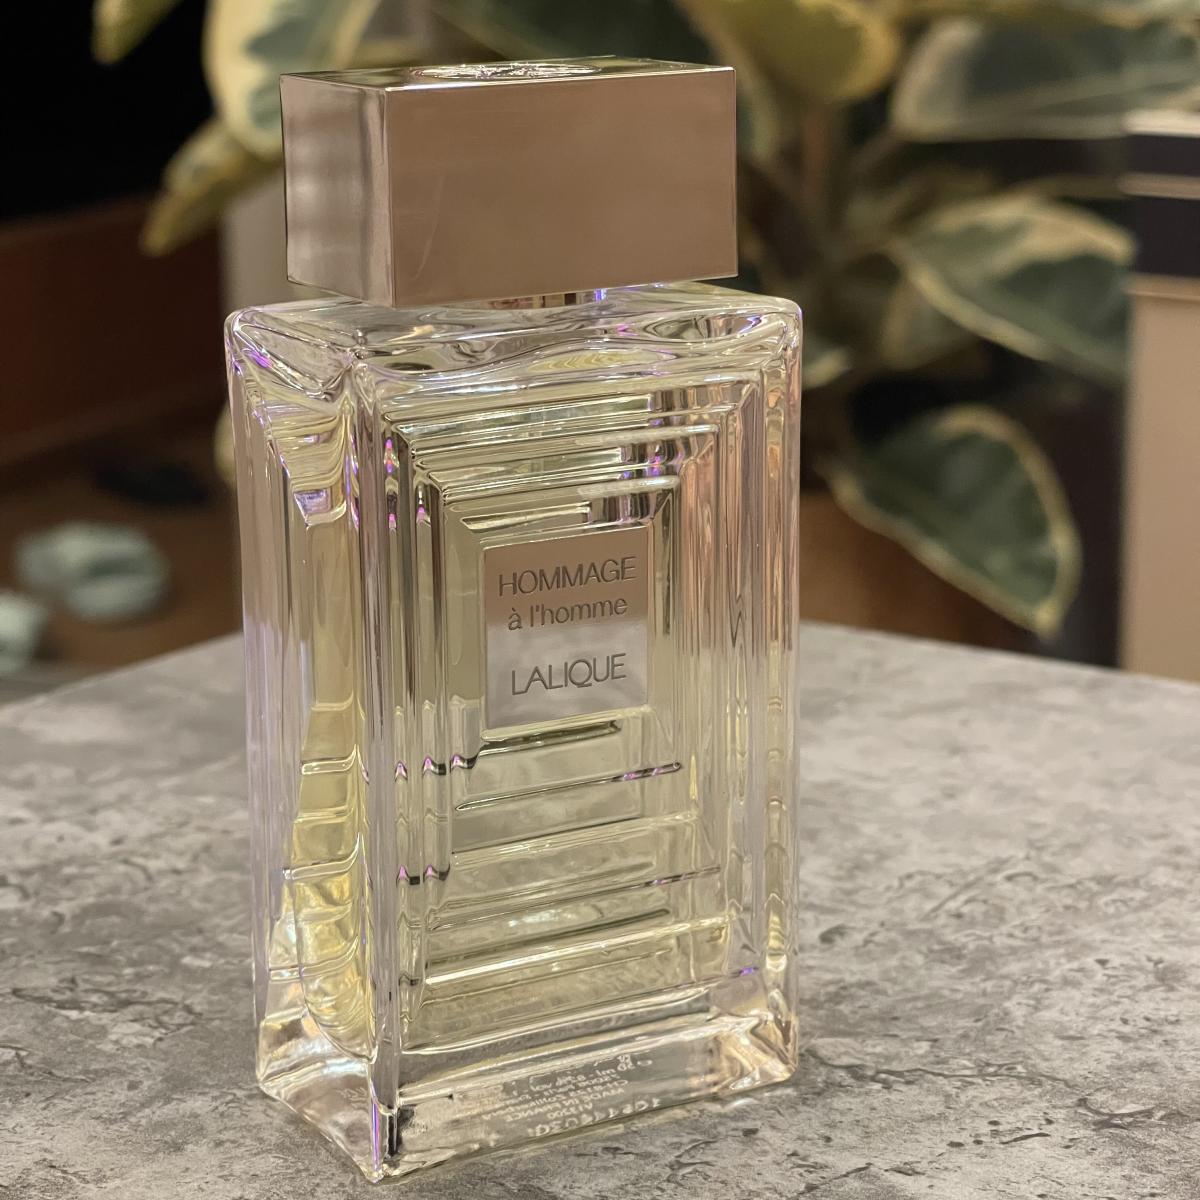 Hommage à l'Homme Eau de Toilette Lalique cologne - a fragrance for men ...